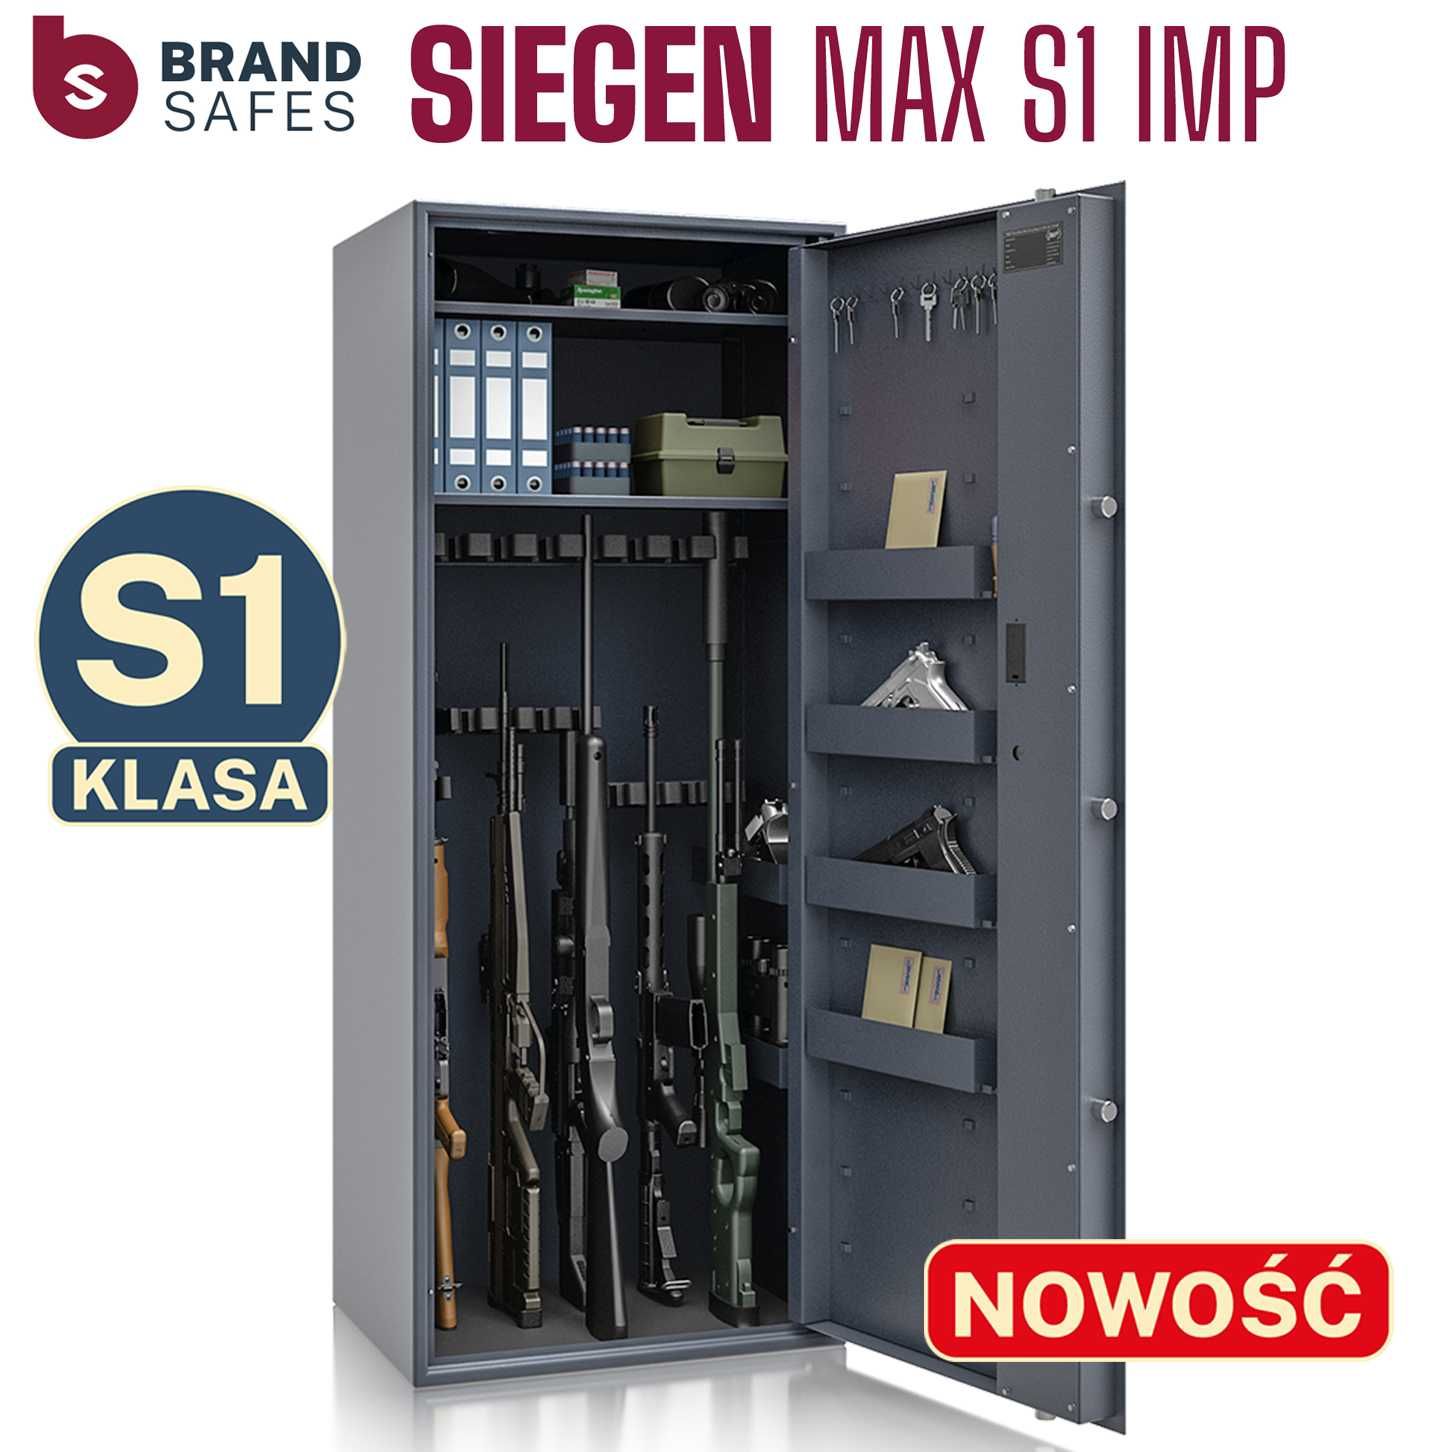 Szafa na broń SIEGEN MAX kl S1 18 szt. broni 84.12 zamek elektroniczny